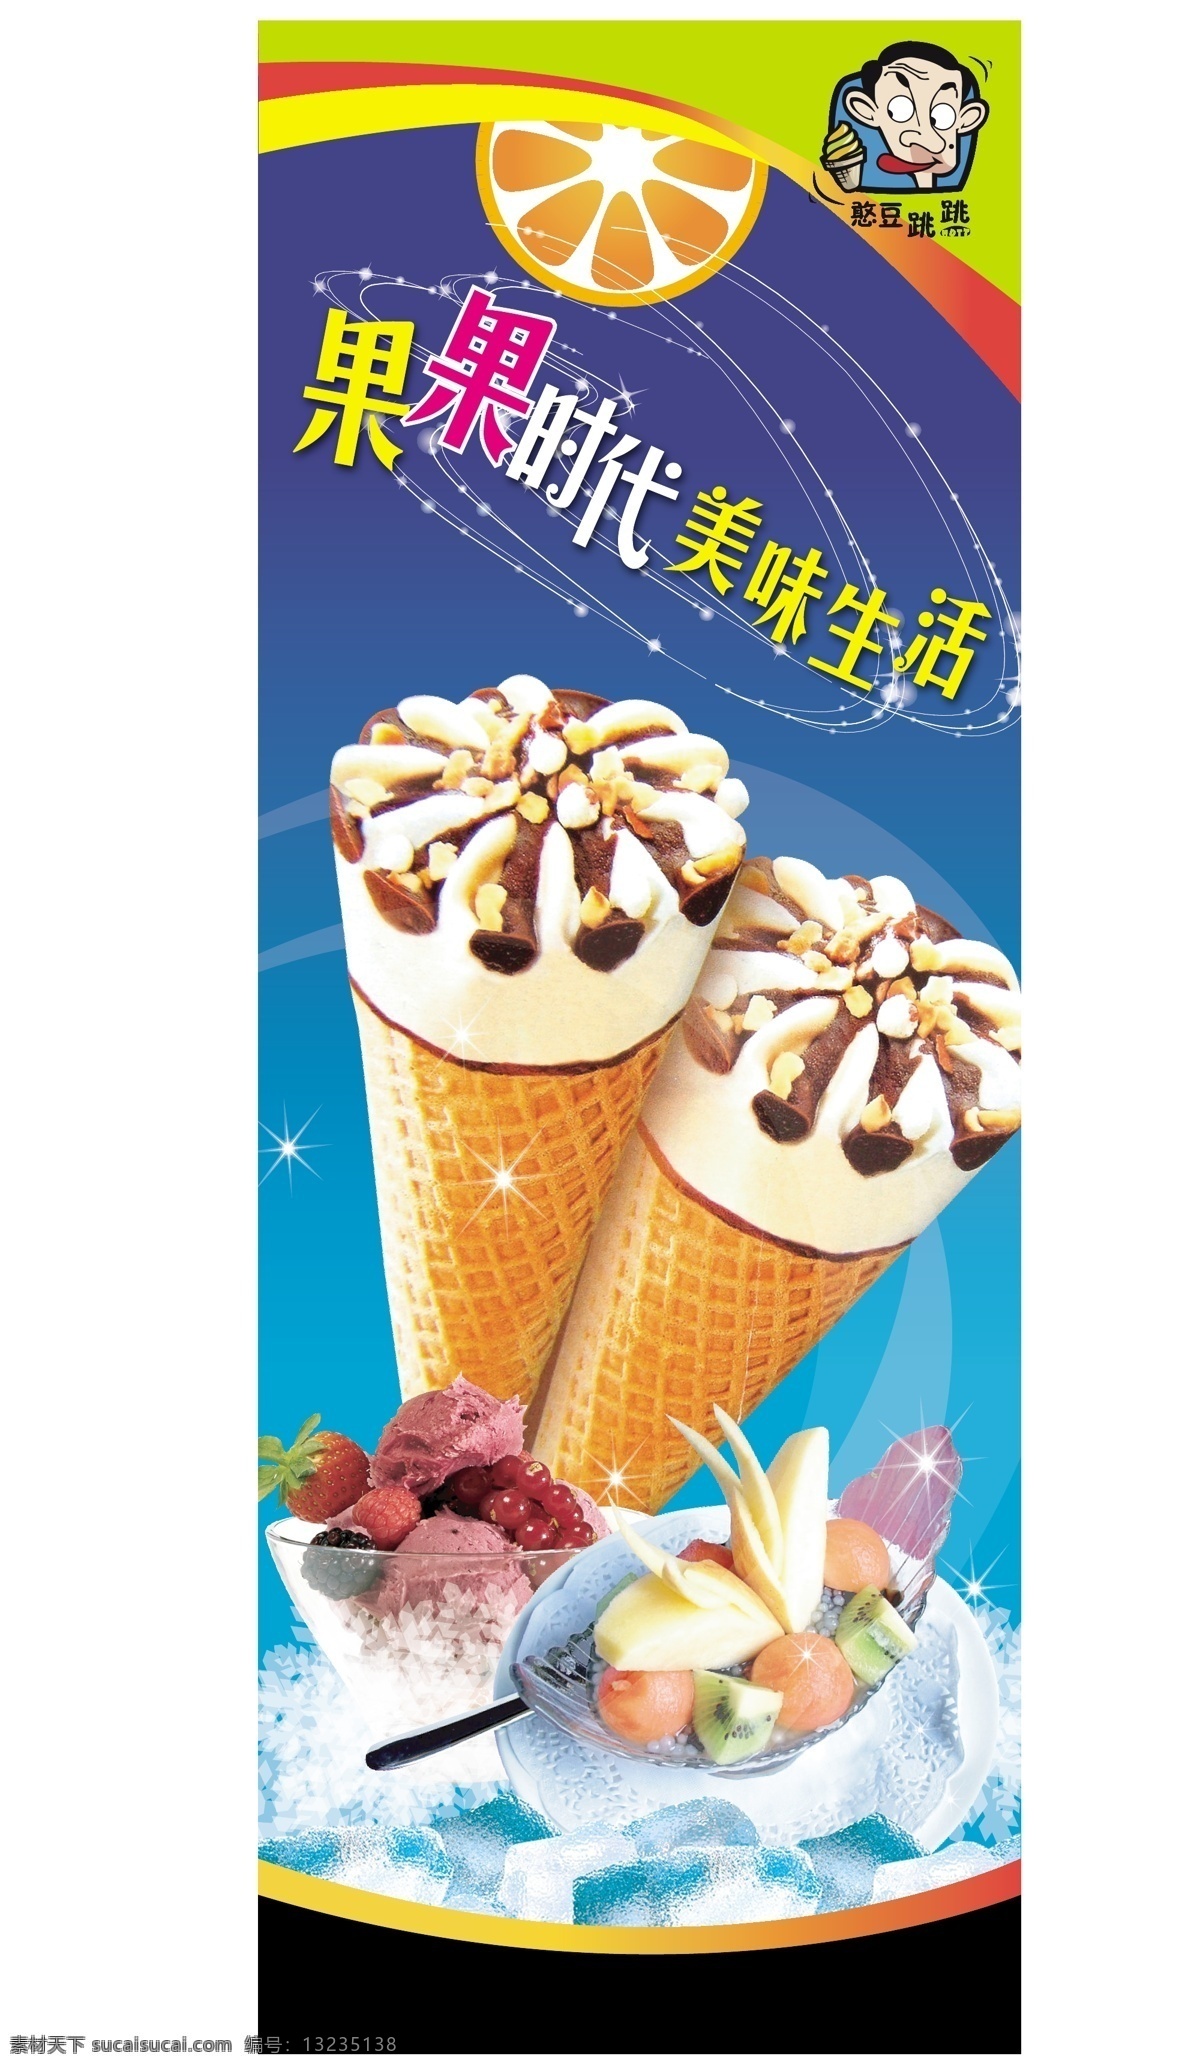 冰淇淋宣传单 冰淇淋 冰块 名片卡片 矢量图库 air作品